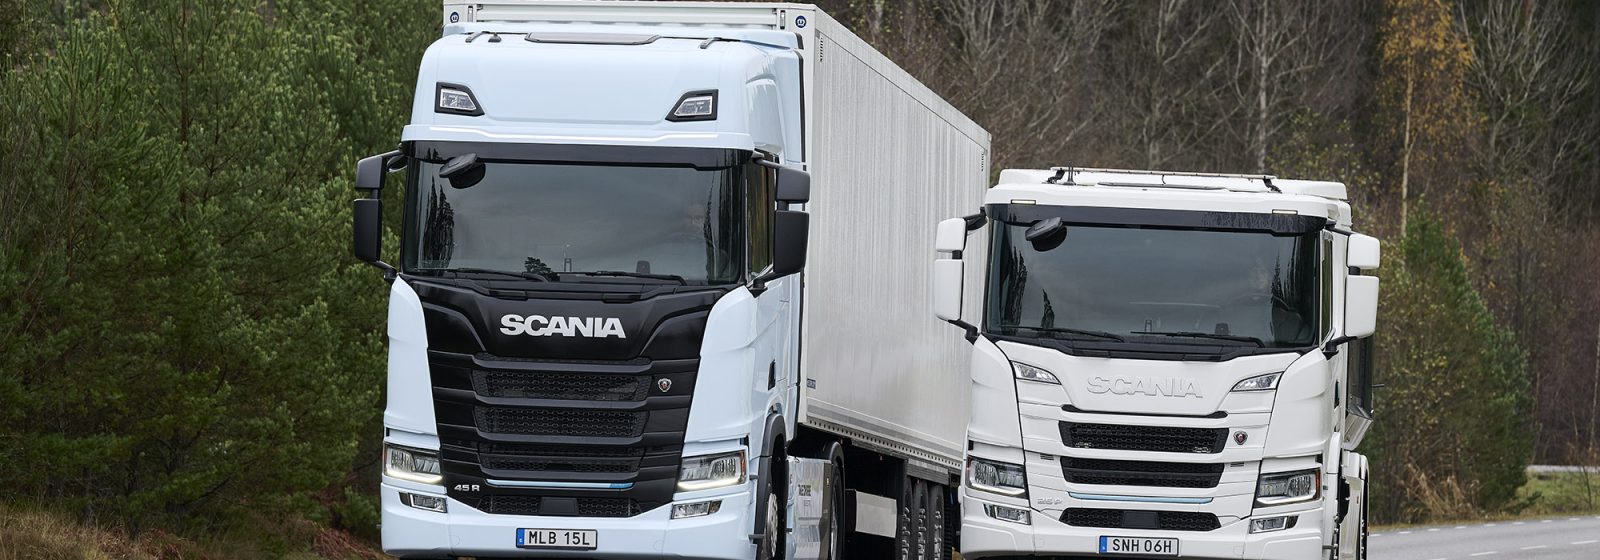 Scania-vrachtwagens